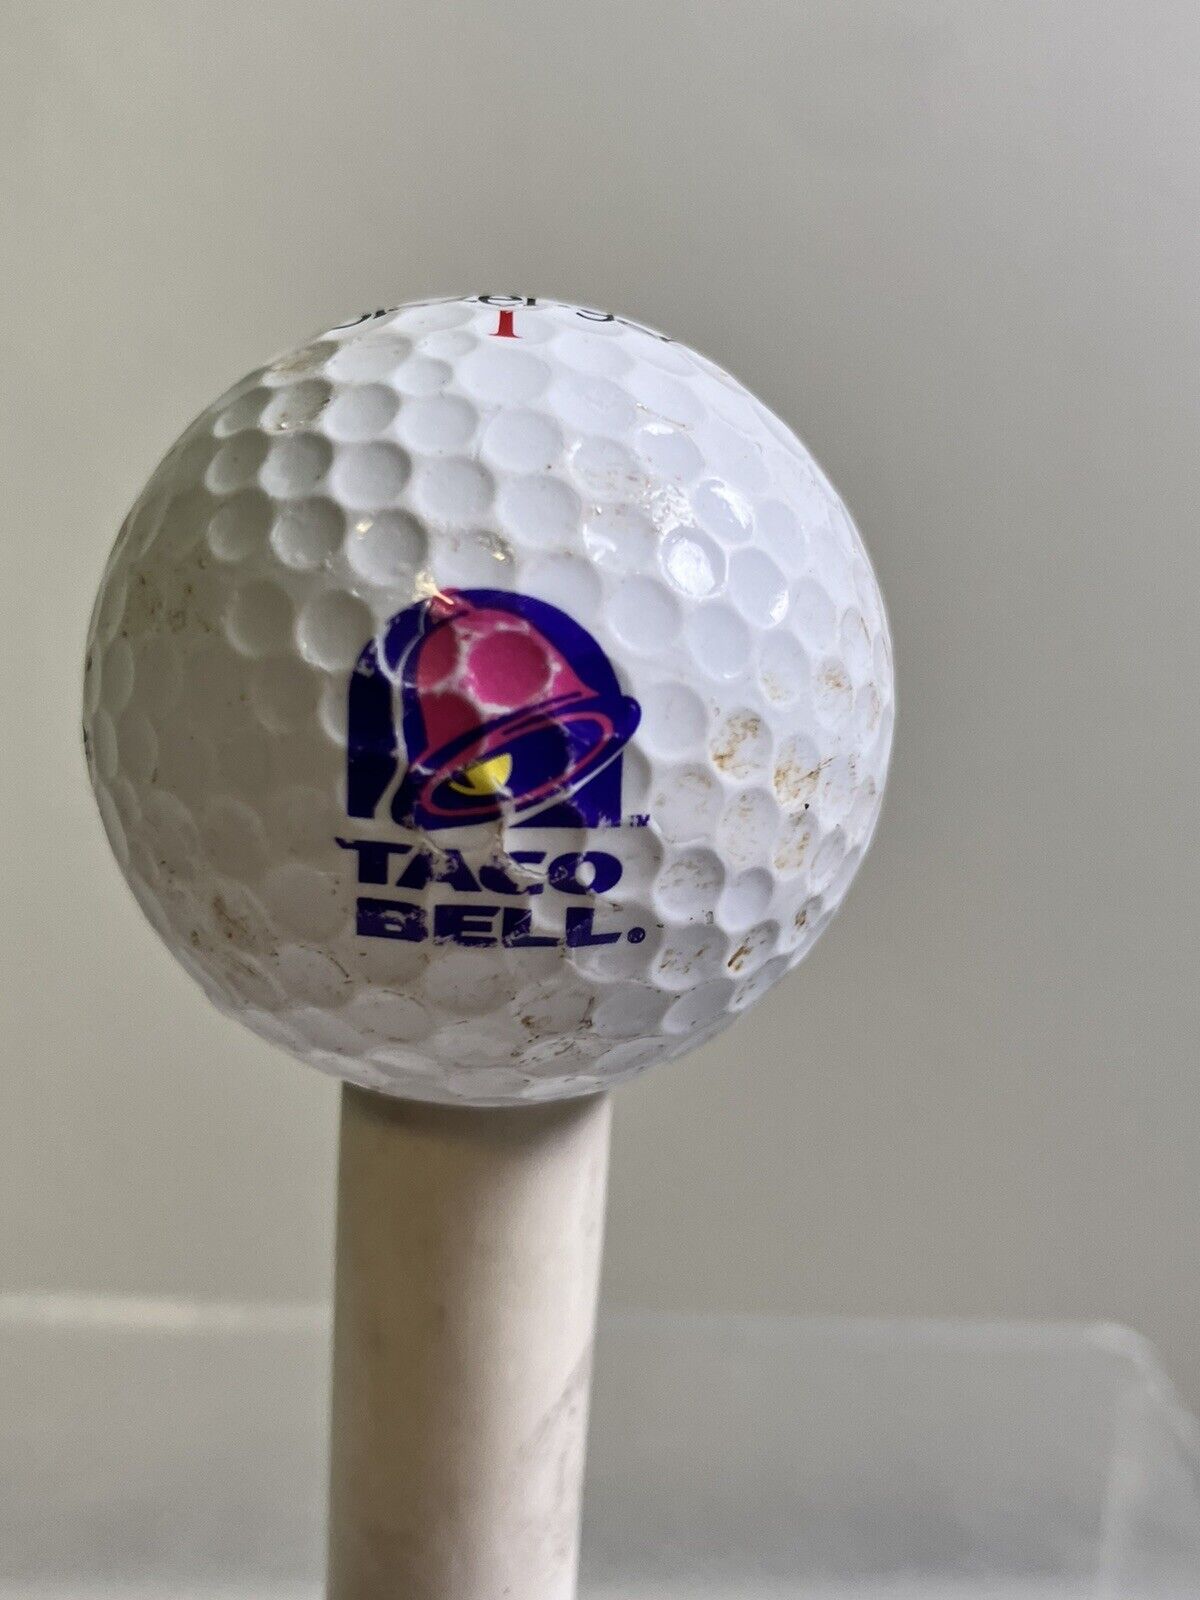 RARE/Slazenger (1) Taco Bell Golf Ball